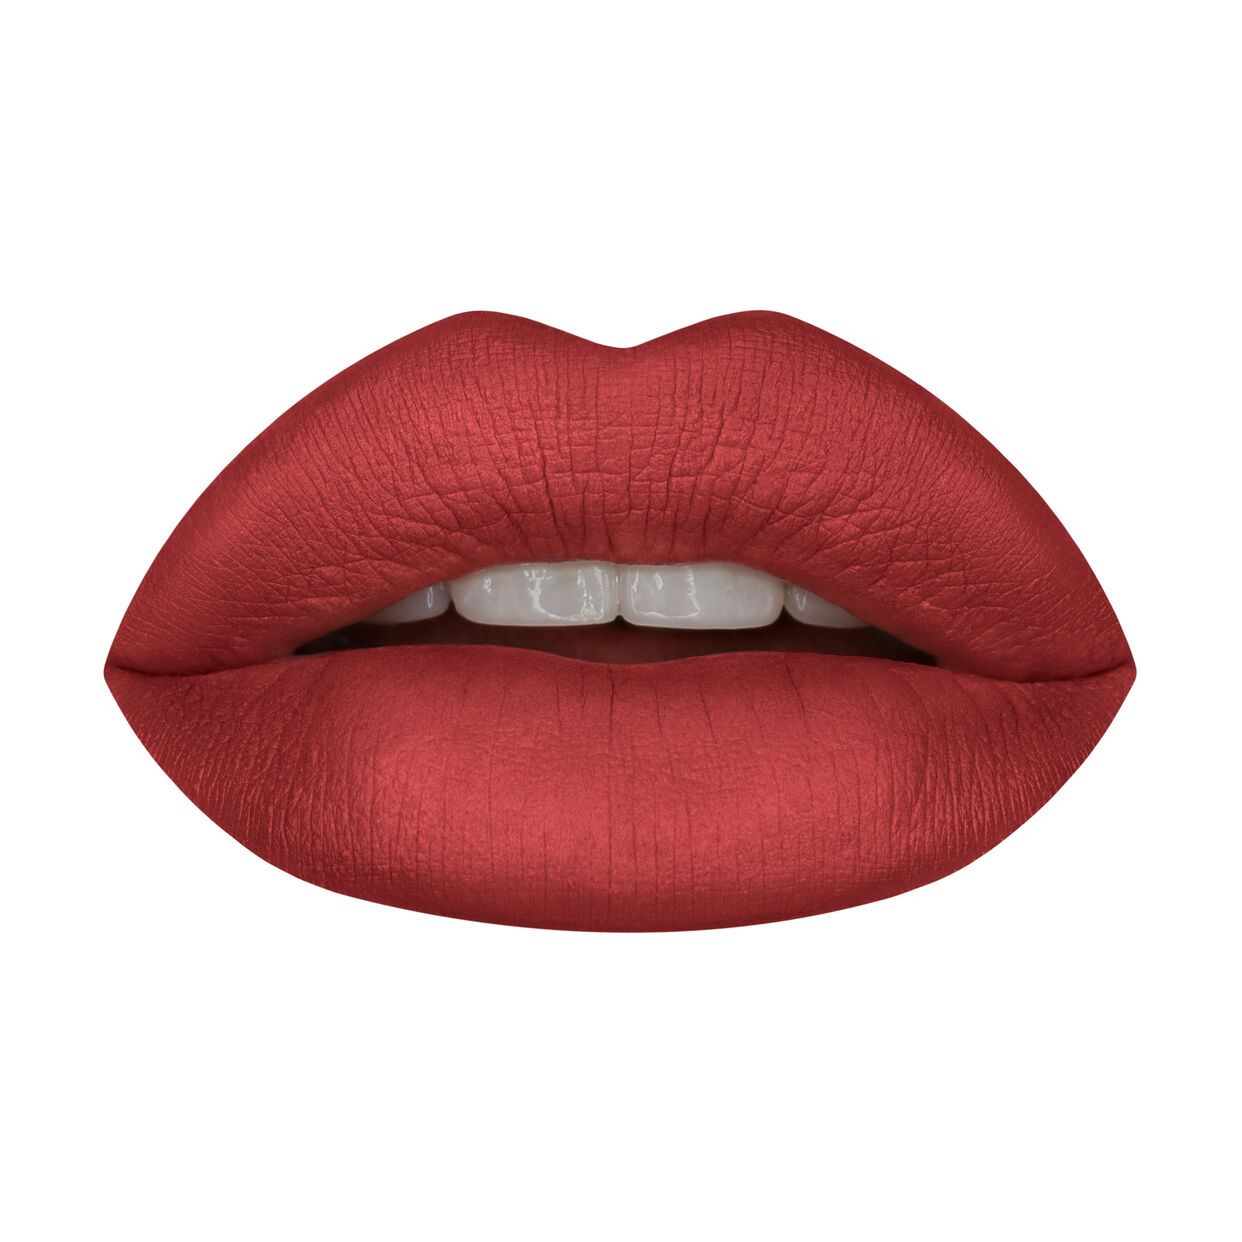 Huda Beauty Power Bullet Matte Lipstick- Third Date Jotey